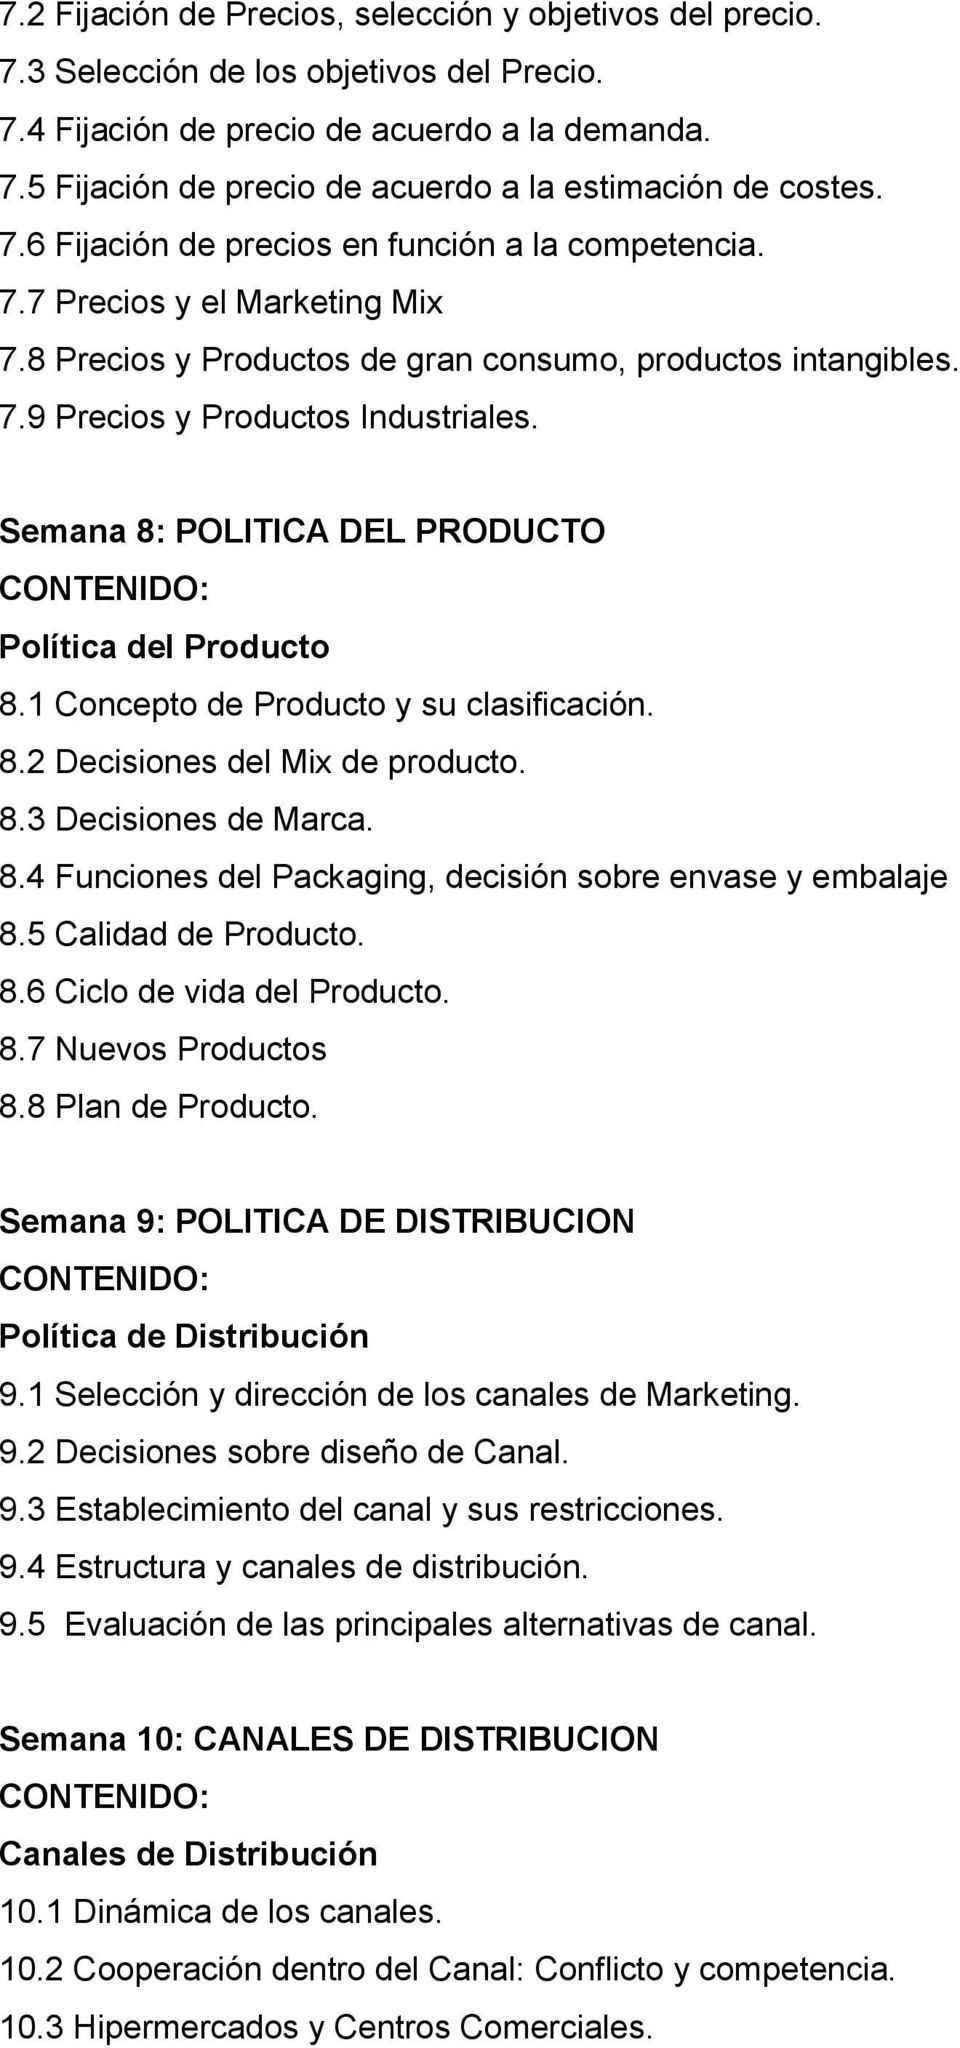 Semana 8: POLITICA DEL PRODUCTO Política del Producto 8.1 Concepto de Producto y su clasificación. 8.2 Decisiones del Mix de producto. 8.3 Decisiones de Marca. 8.4 Funciones del Packaging, decisión sobre envase y embalaje 8.